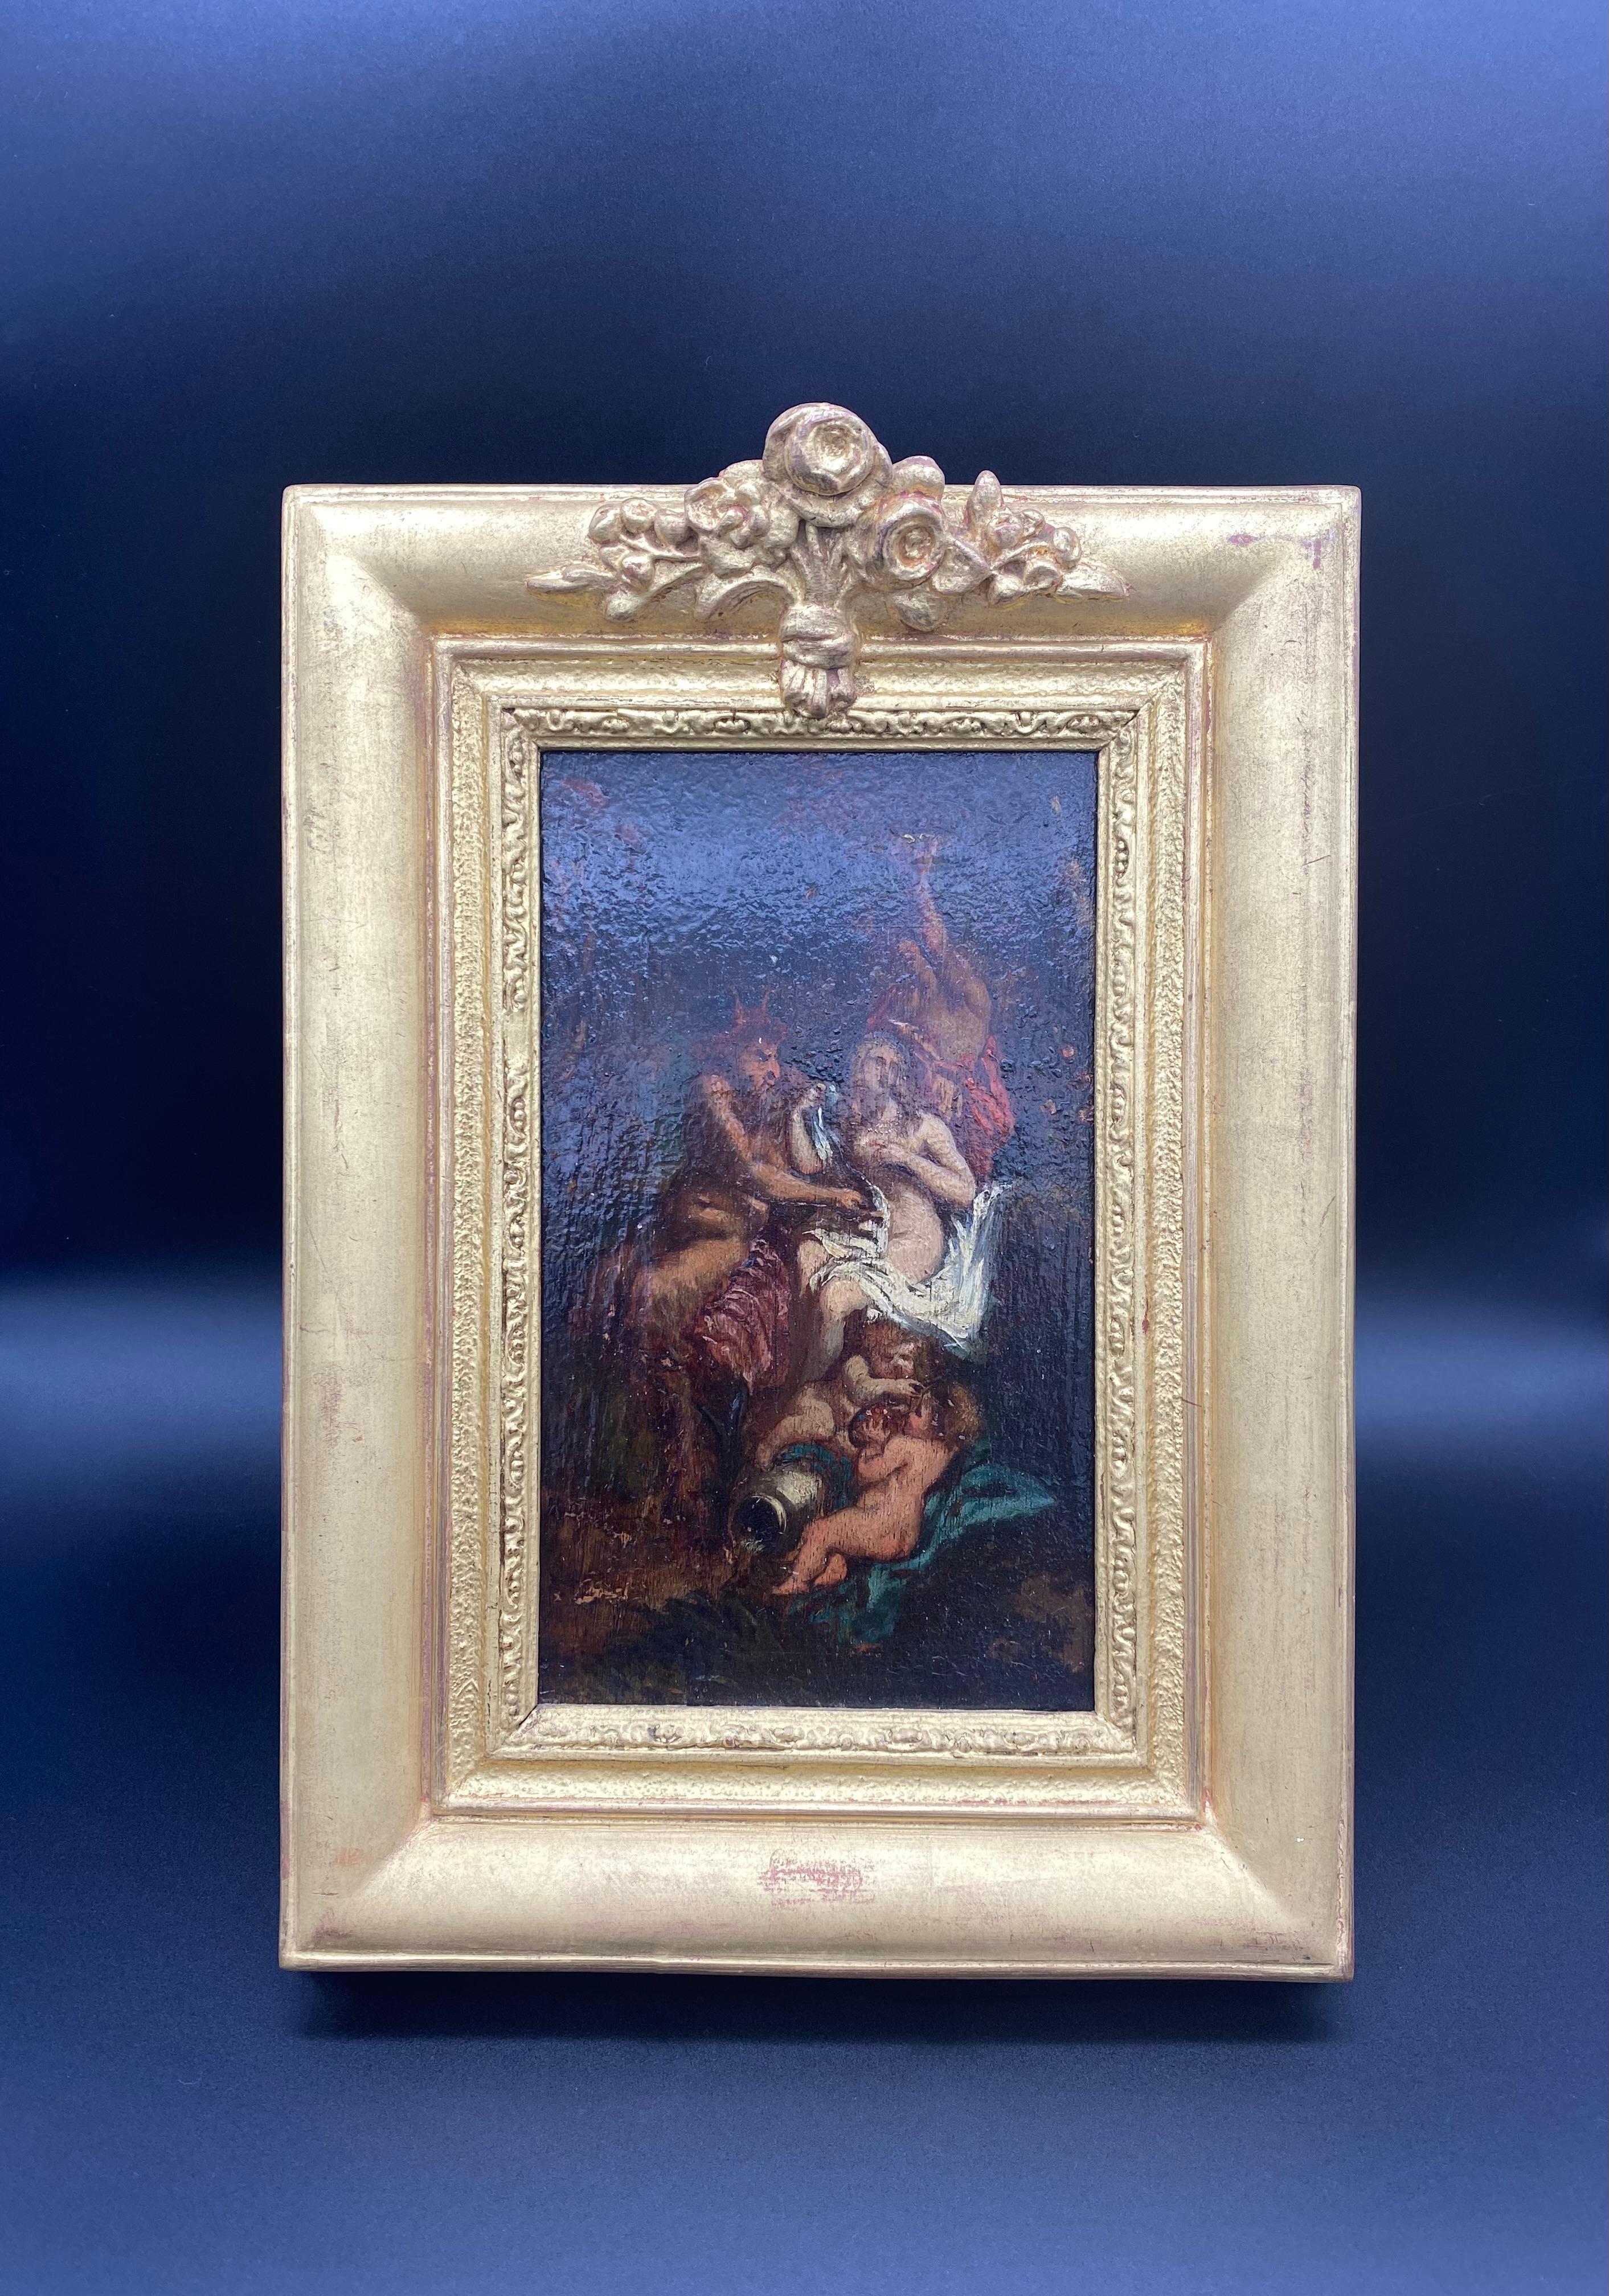 Schönes Öl auf Tafel aus der italienischen Schule des 18. Jahrhunderts, das einen Faun darstellt, der versucht, eine halbnackte Nymphe zu verführen. Hinter ihnen scheint ein Mann ein Tablett gebracht zu haben, und zu ihren Füßen spielen zwei Putten